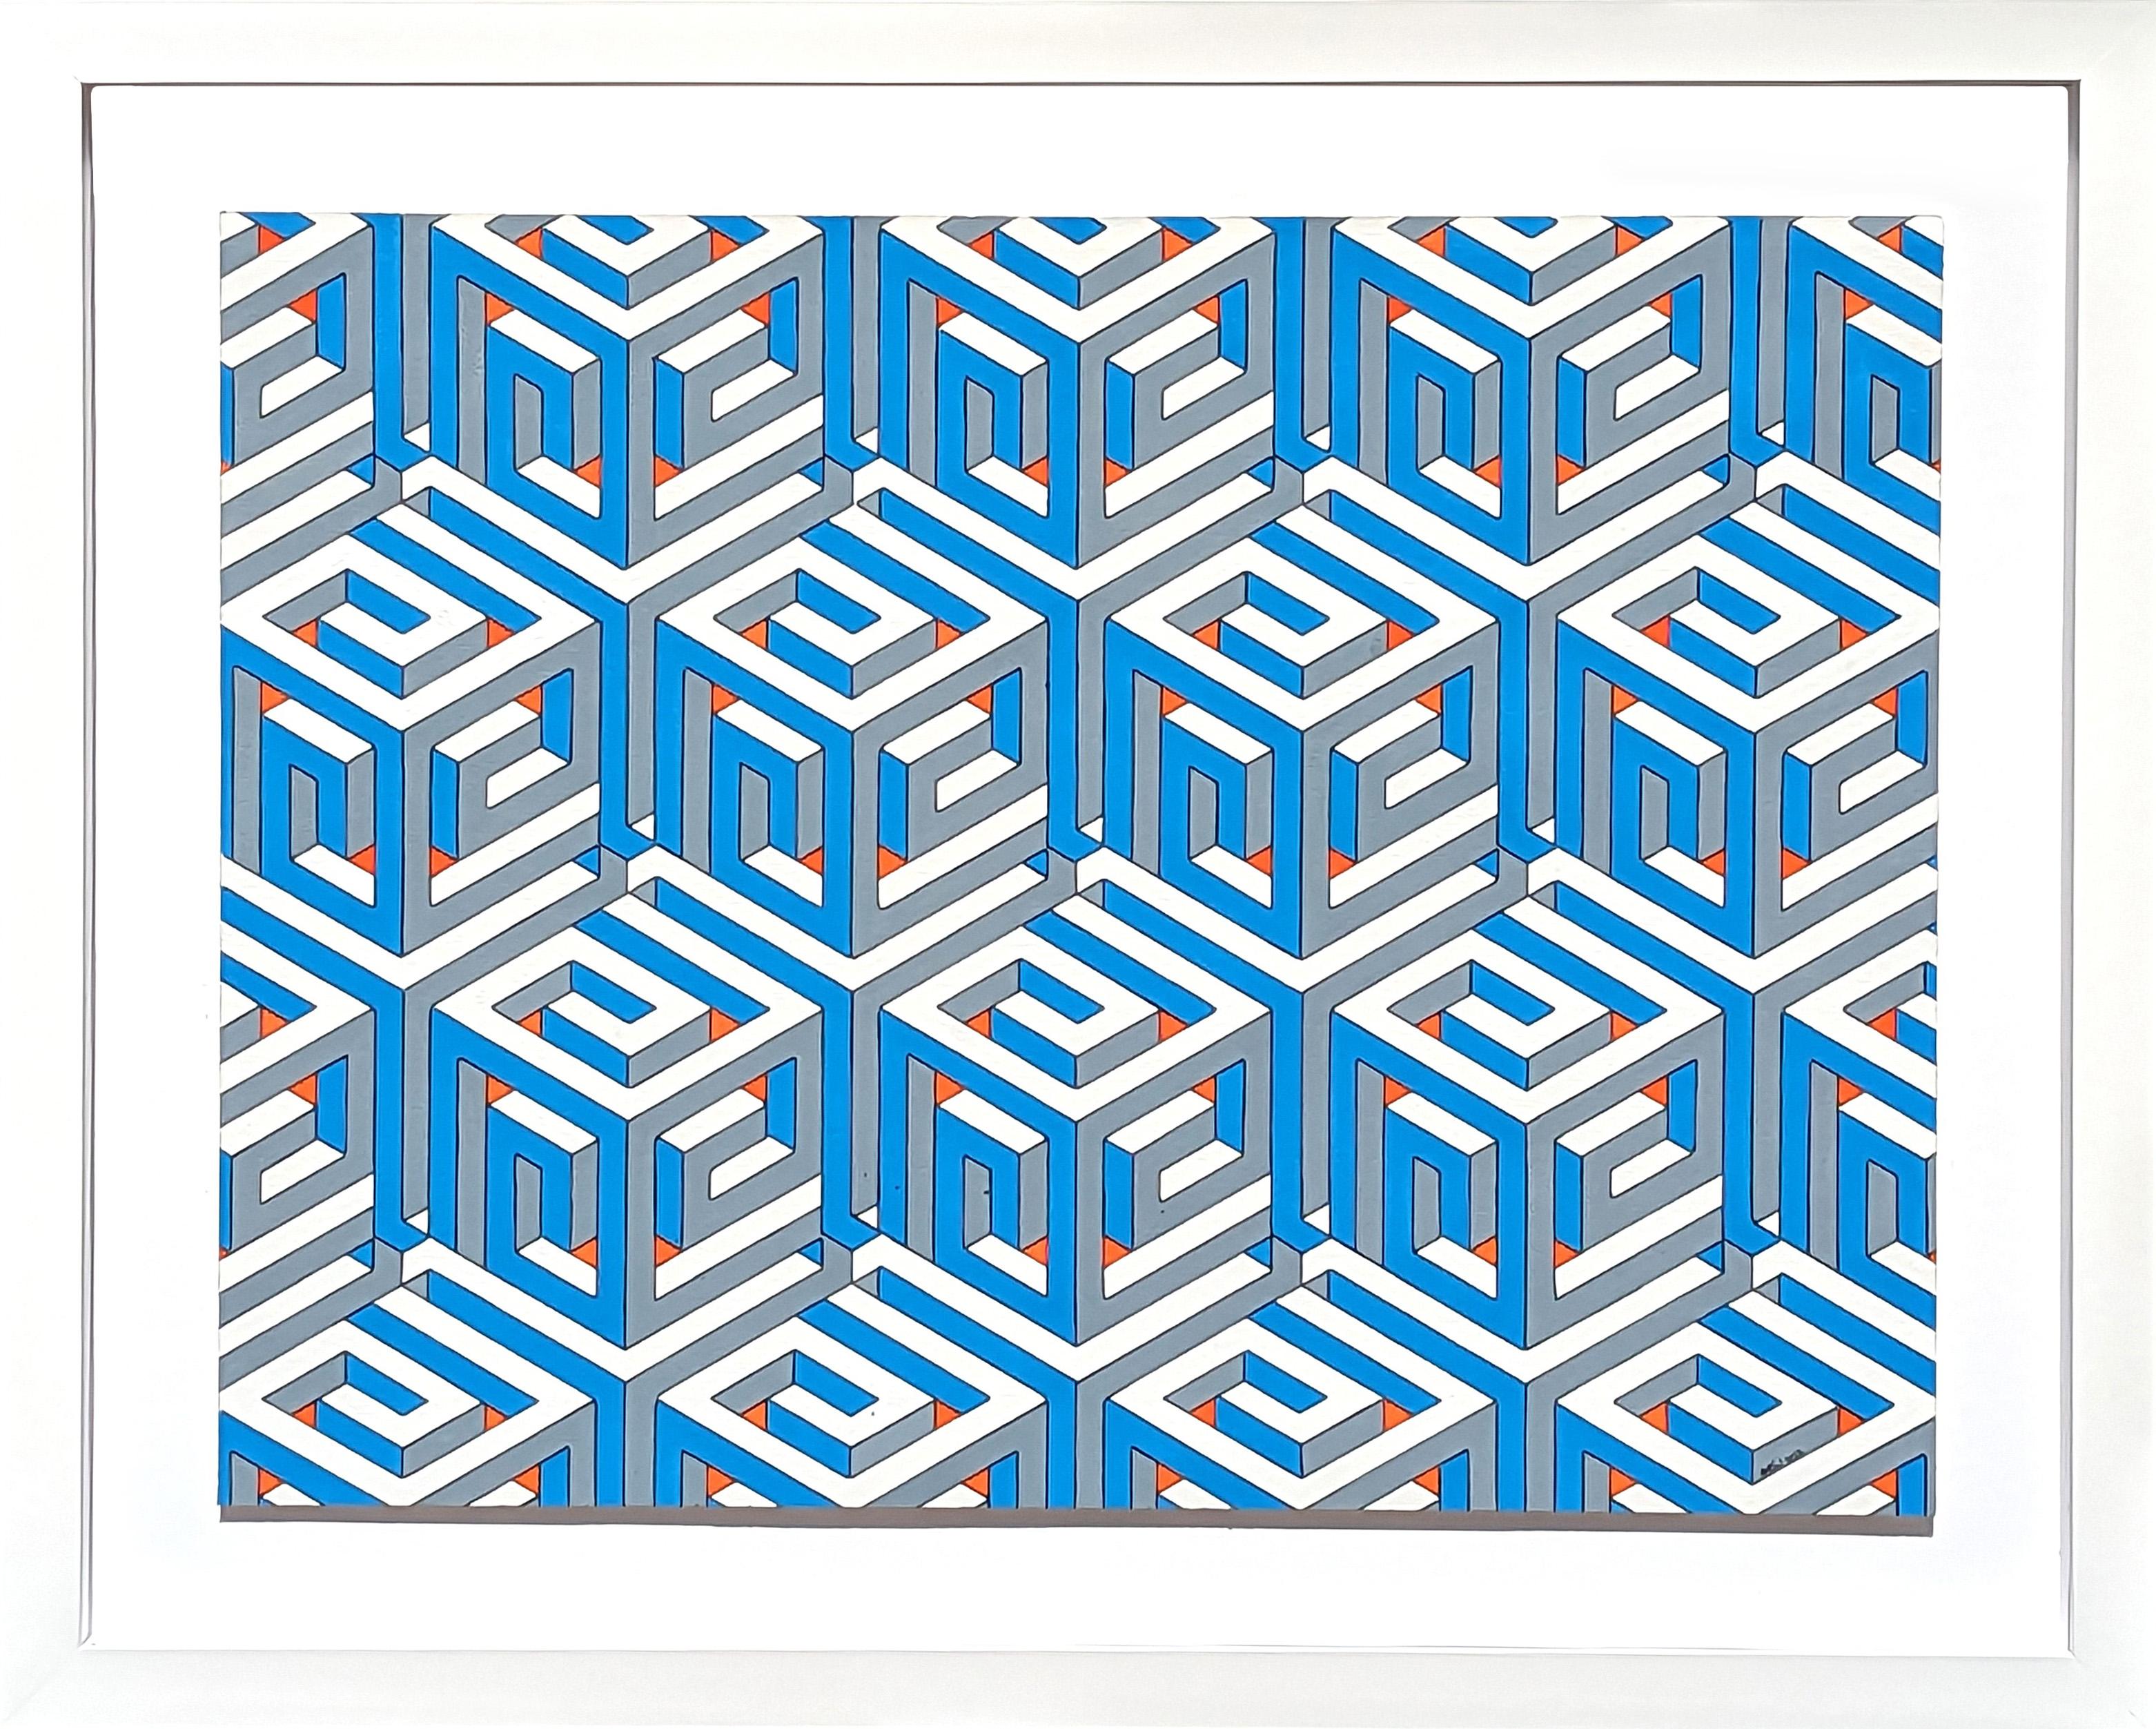 Austin Magruder Abstract Drawing – "Überlappende Spiralwürfel" Modern Grün & Aqua Handgezeichnet Mosaik Abstrakt